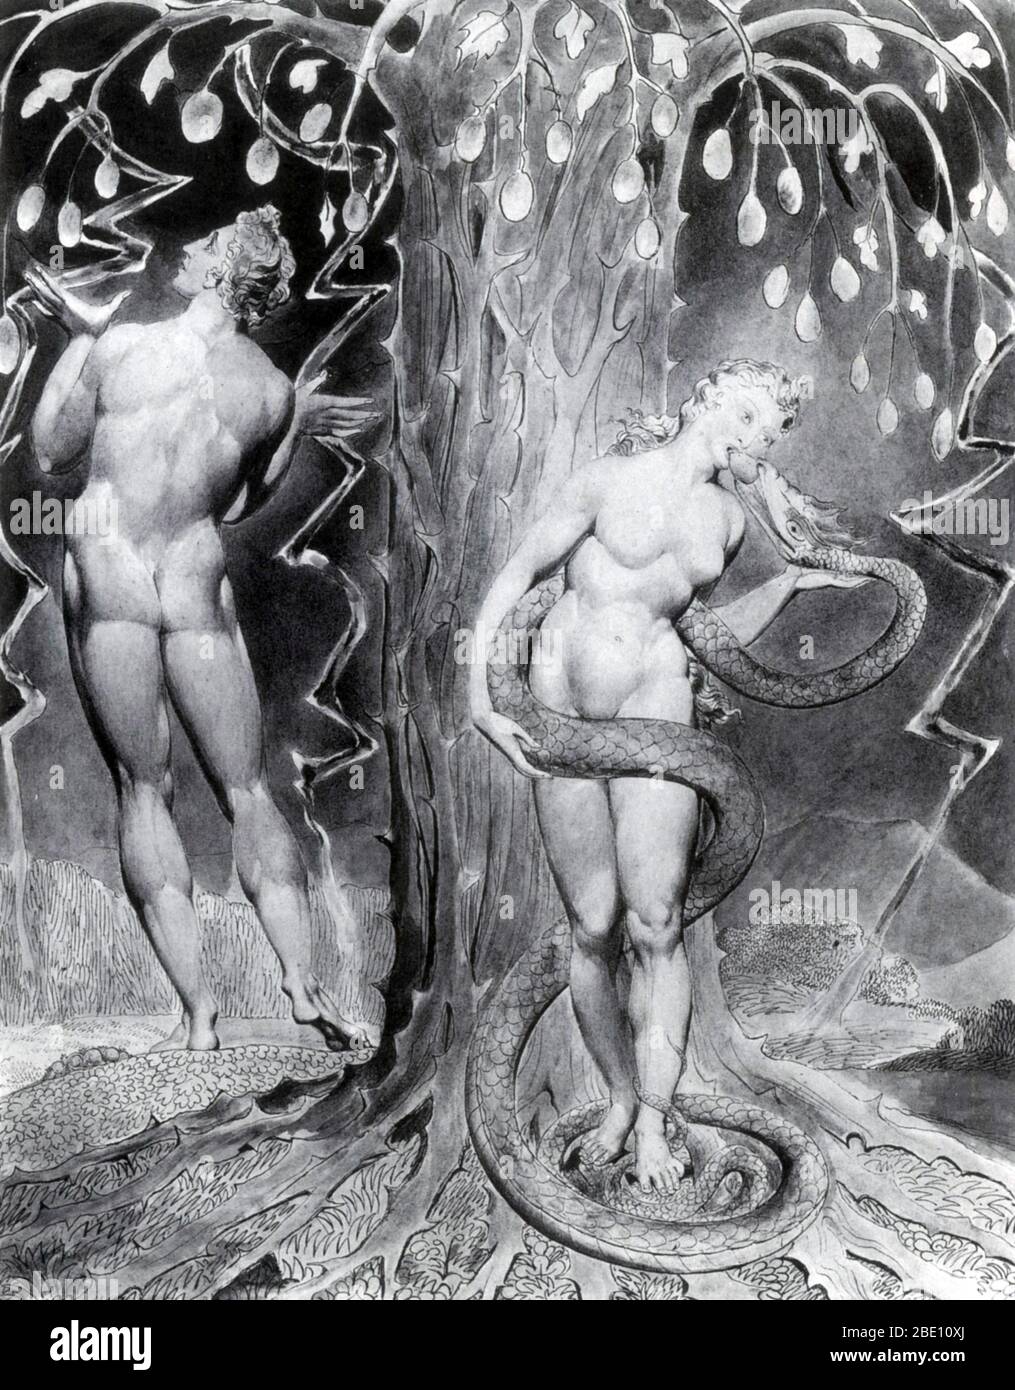 'La Tentation et la chute d'Eve' illustré par William Blake pour une édition 1808 de Milton's pour les 'Paradis perdu'. Le paradis perdu est un poème épique en blanc vers par le poète anglais John Milton (9 décembre 1608 - 8 novembre 1674). Le poème porte sur l'histoire biblique de la chute de l'homme : la tentation d'Adam et Eve par l'ange déchu Satan et leur expulsion du Jardin d'Eden. L'objectif de Milton, a déclaré dans le livre I, est de 'justifier les voies de Dieu aux hommes". William Blake (Novembre 28, 1757 - 12 août 1827) était un poète anglais, peintre, graveur et. Largement ignorés au cours de sa vie Banque D'Images